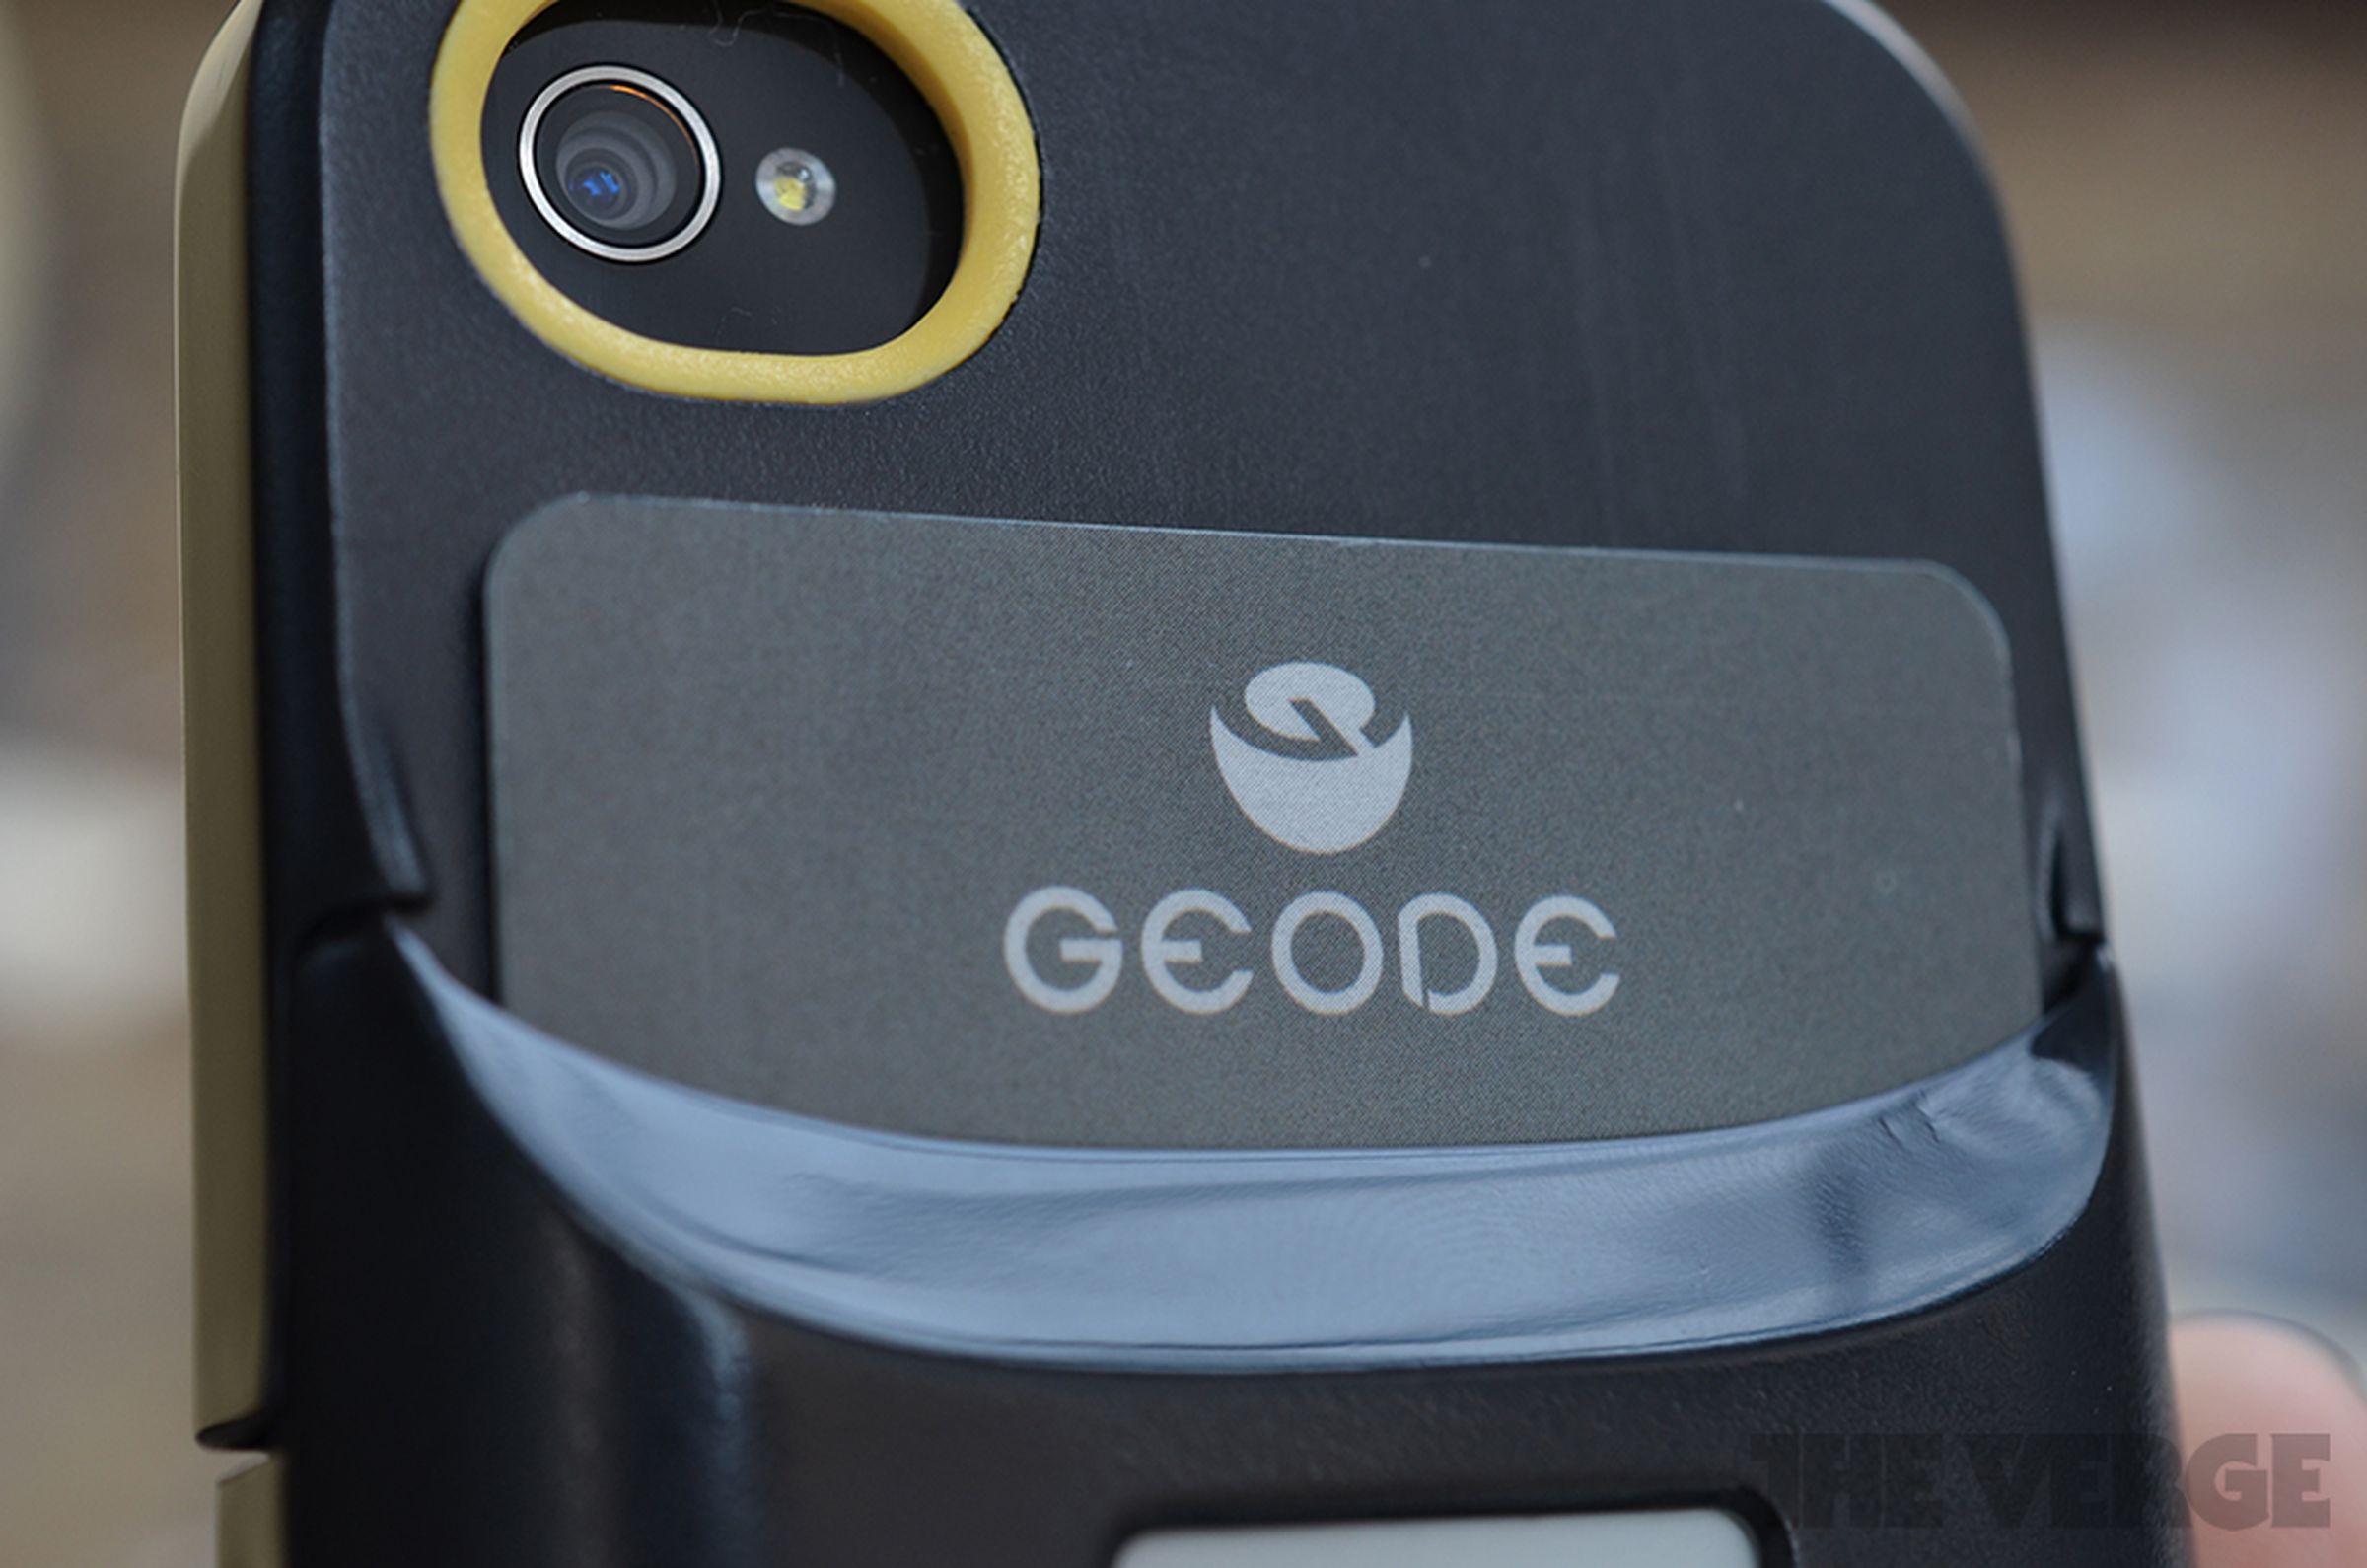 iCache Geode digital wallet hands-on pictures